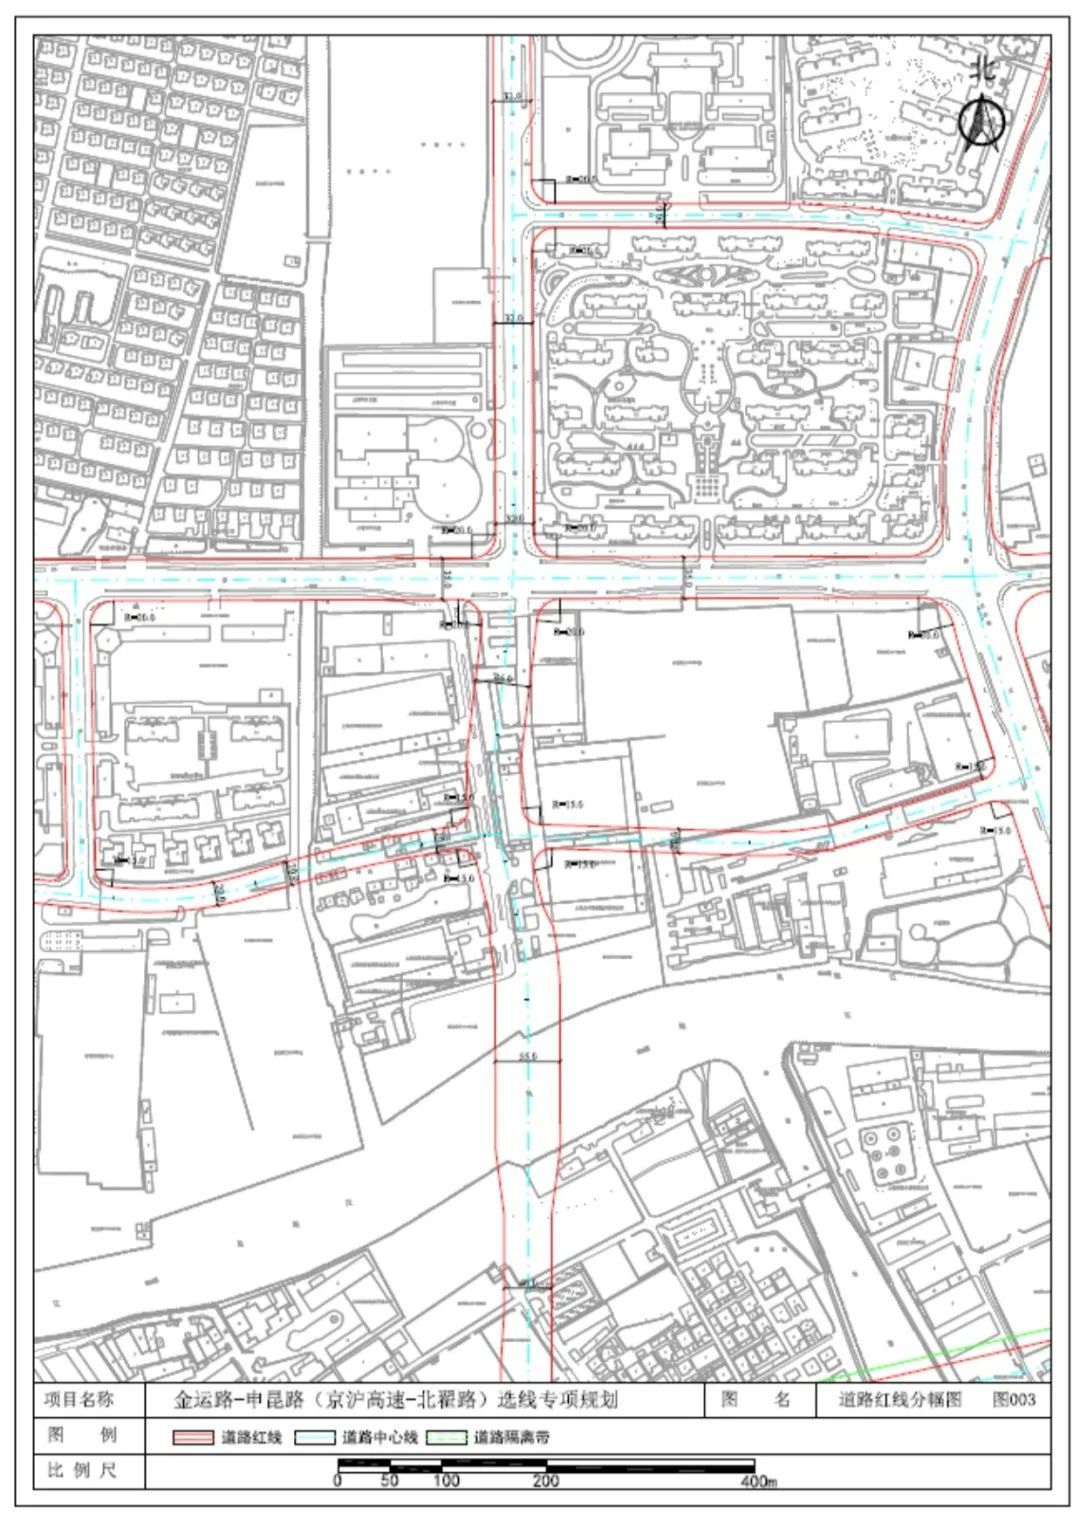 道路红线规划(图3)  道路红线规划调整方案:金运路